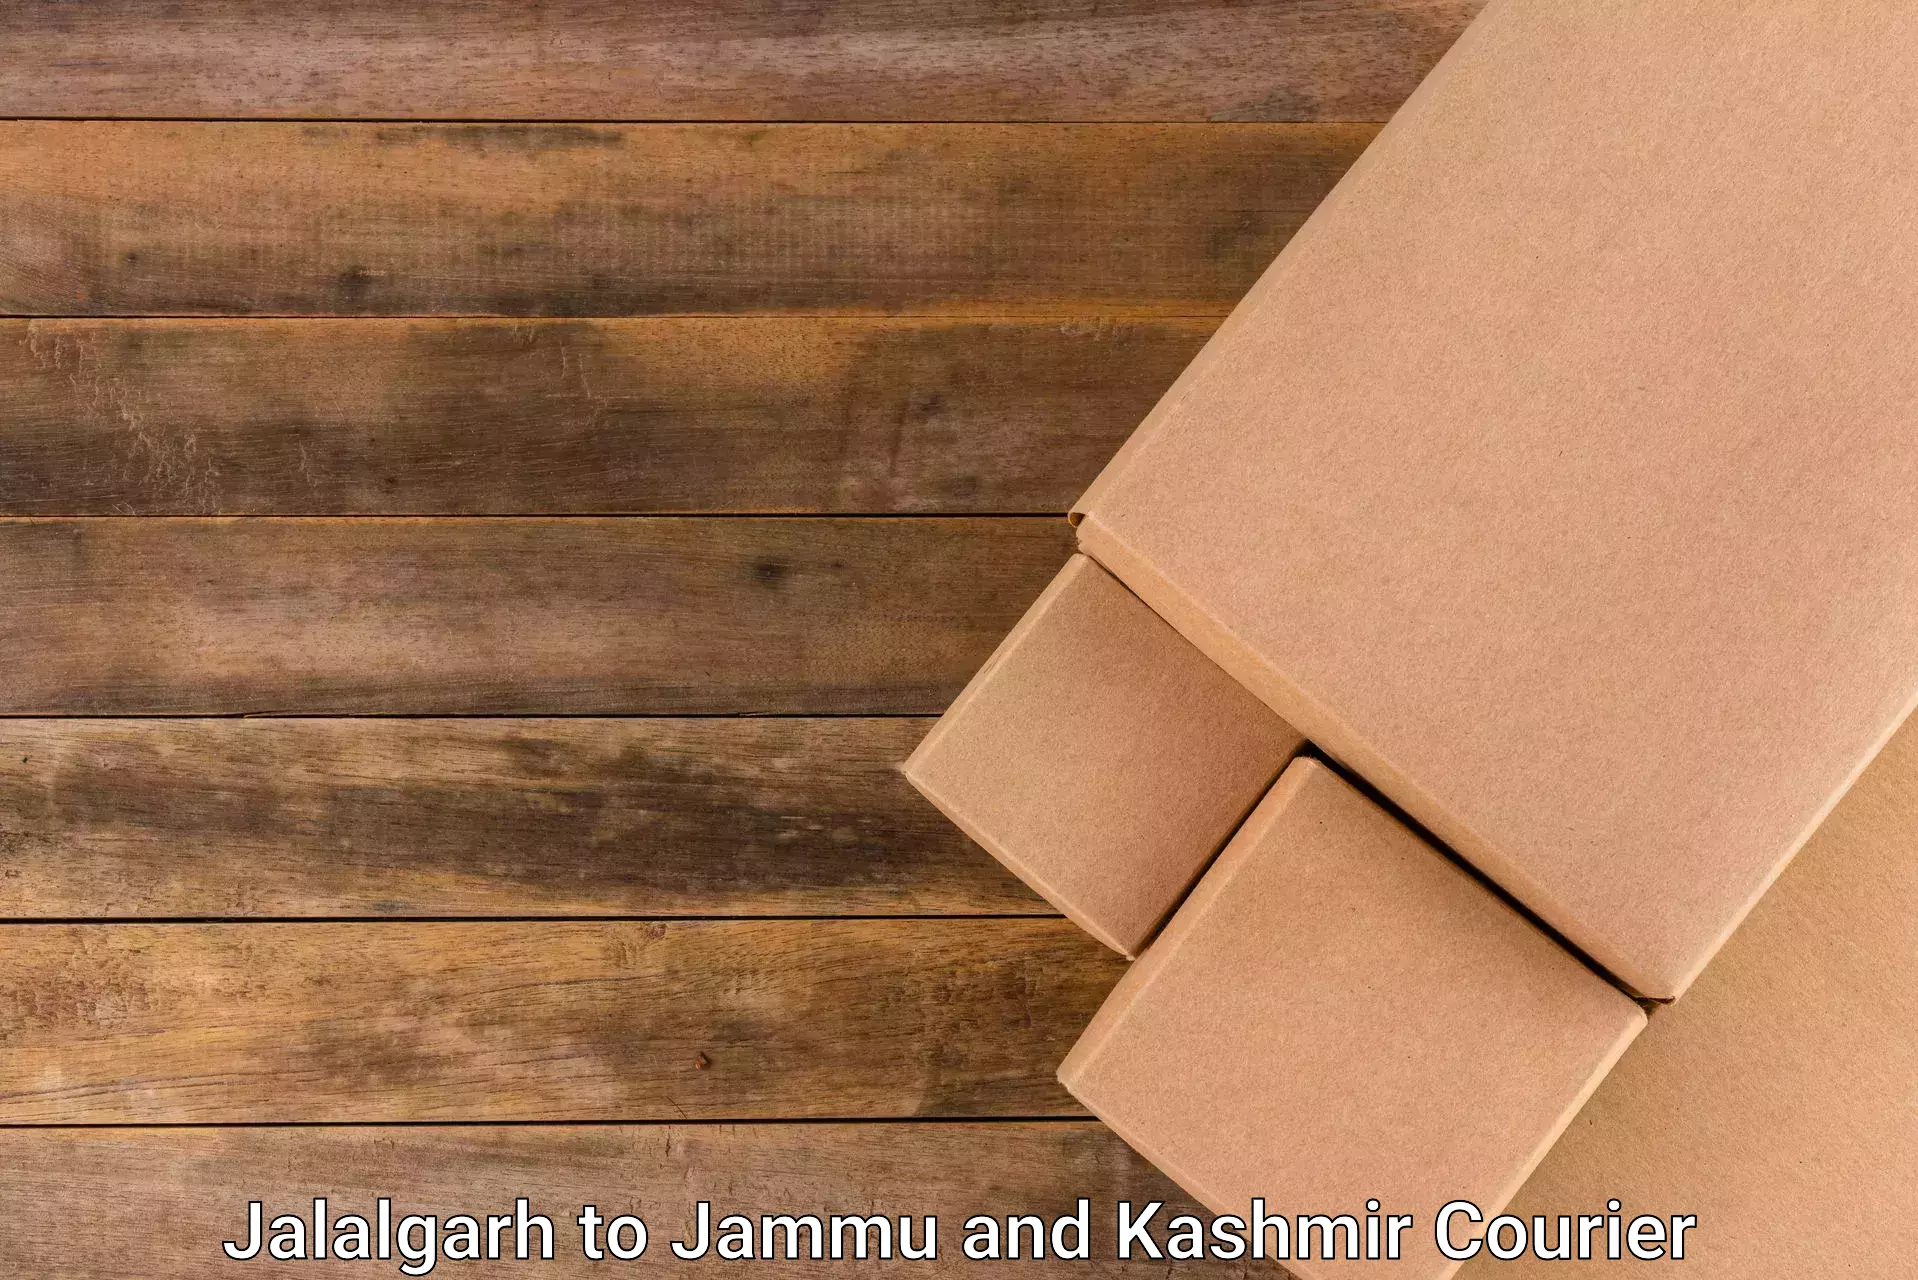 Affordable parcel service Jalalgarh to Bandipur